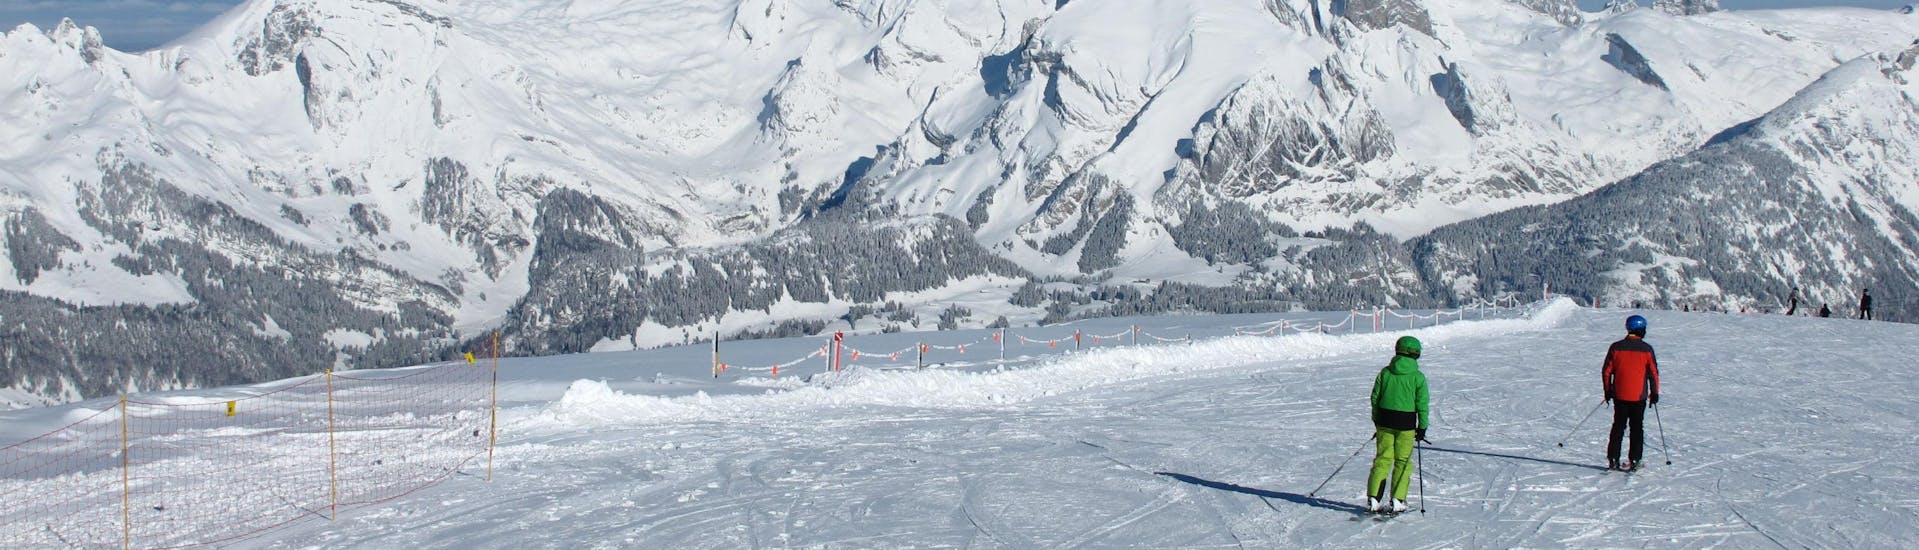 Deux skieurs descendent une piste récemment damée de la stations de ski de Alt St. Johann, où les visiteurs peuvent réserver des cours de ski avec les écoles de ski locales.